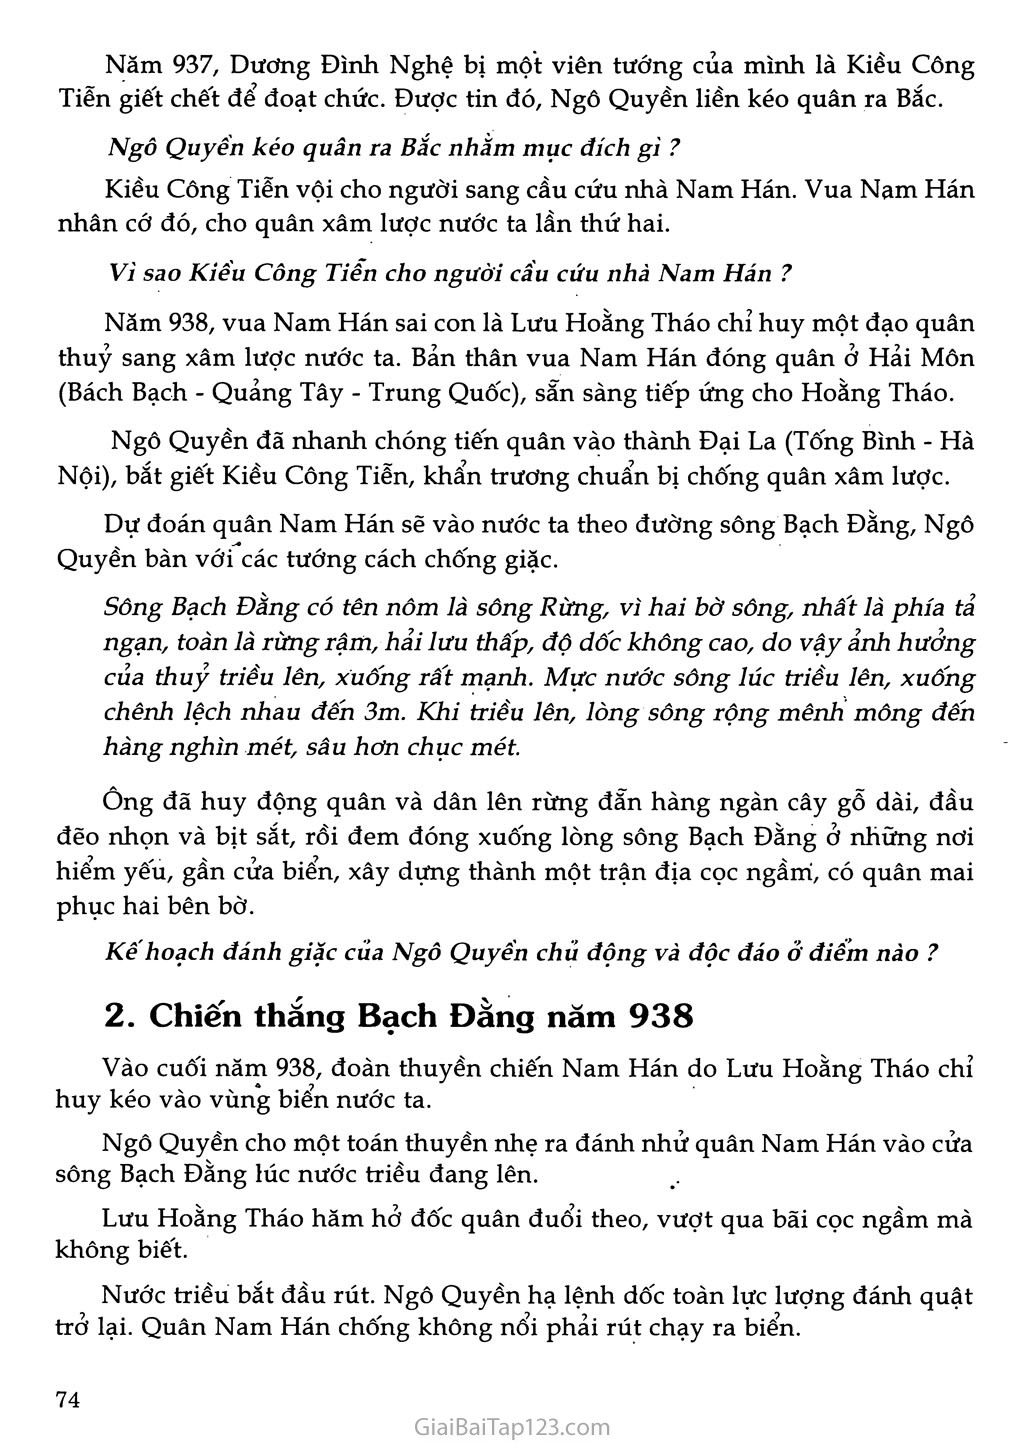 Bài 27 - Ngô Quyền và chiến thắng Bạch Đằng năm 938 (1 tiết) trang 2